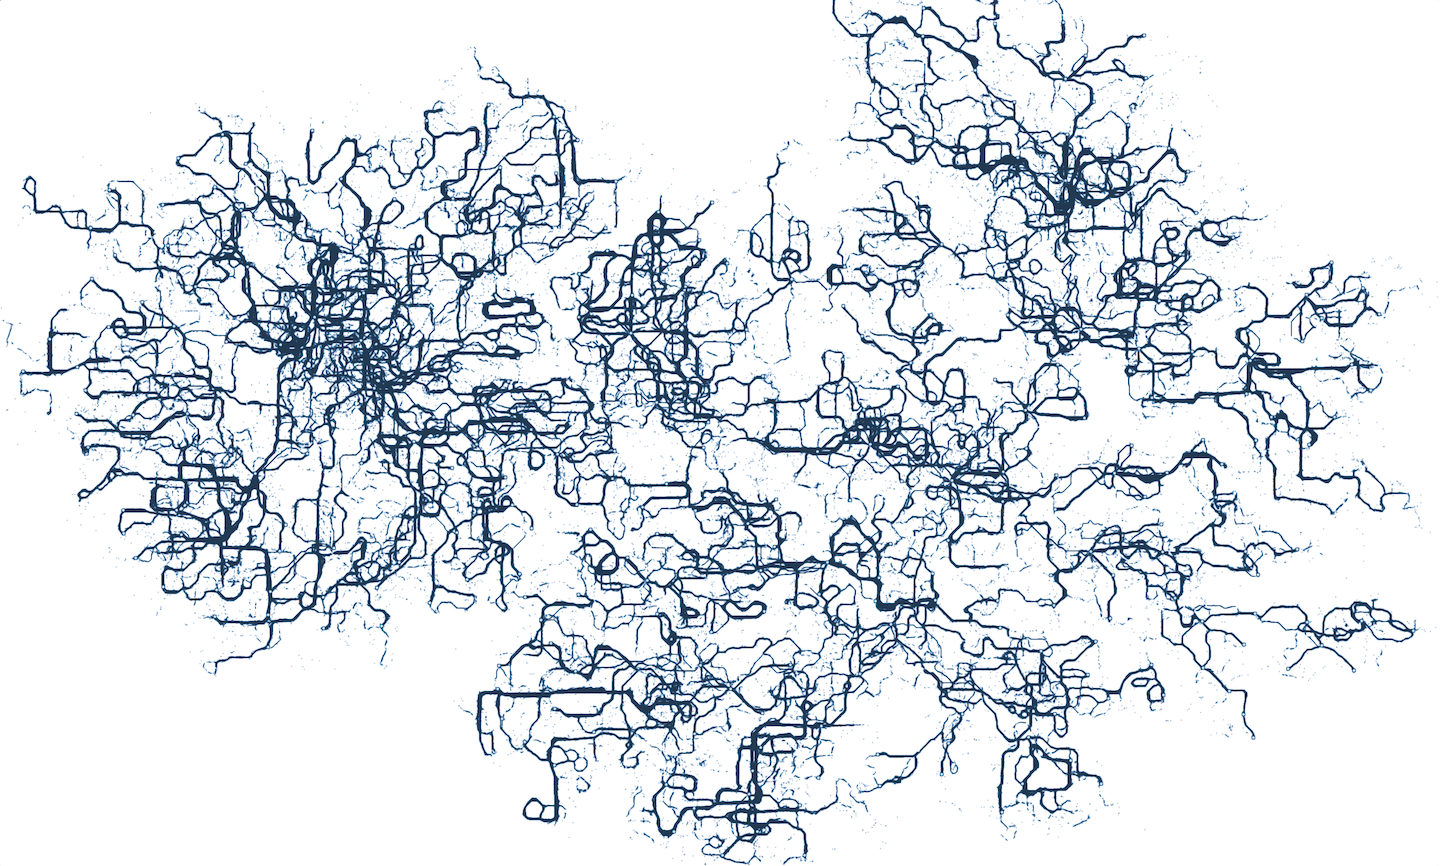 Рисуем муравьями: процедурные изображения при помощи алгоритмов оптимизации муравьиной колонии - 7